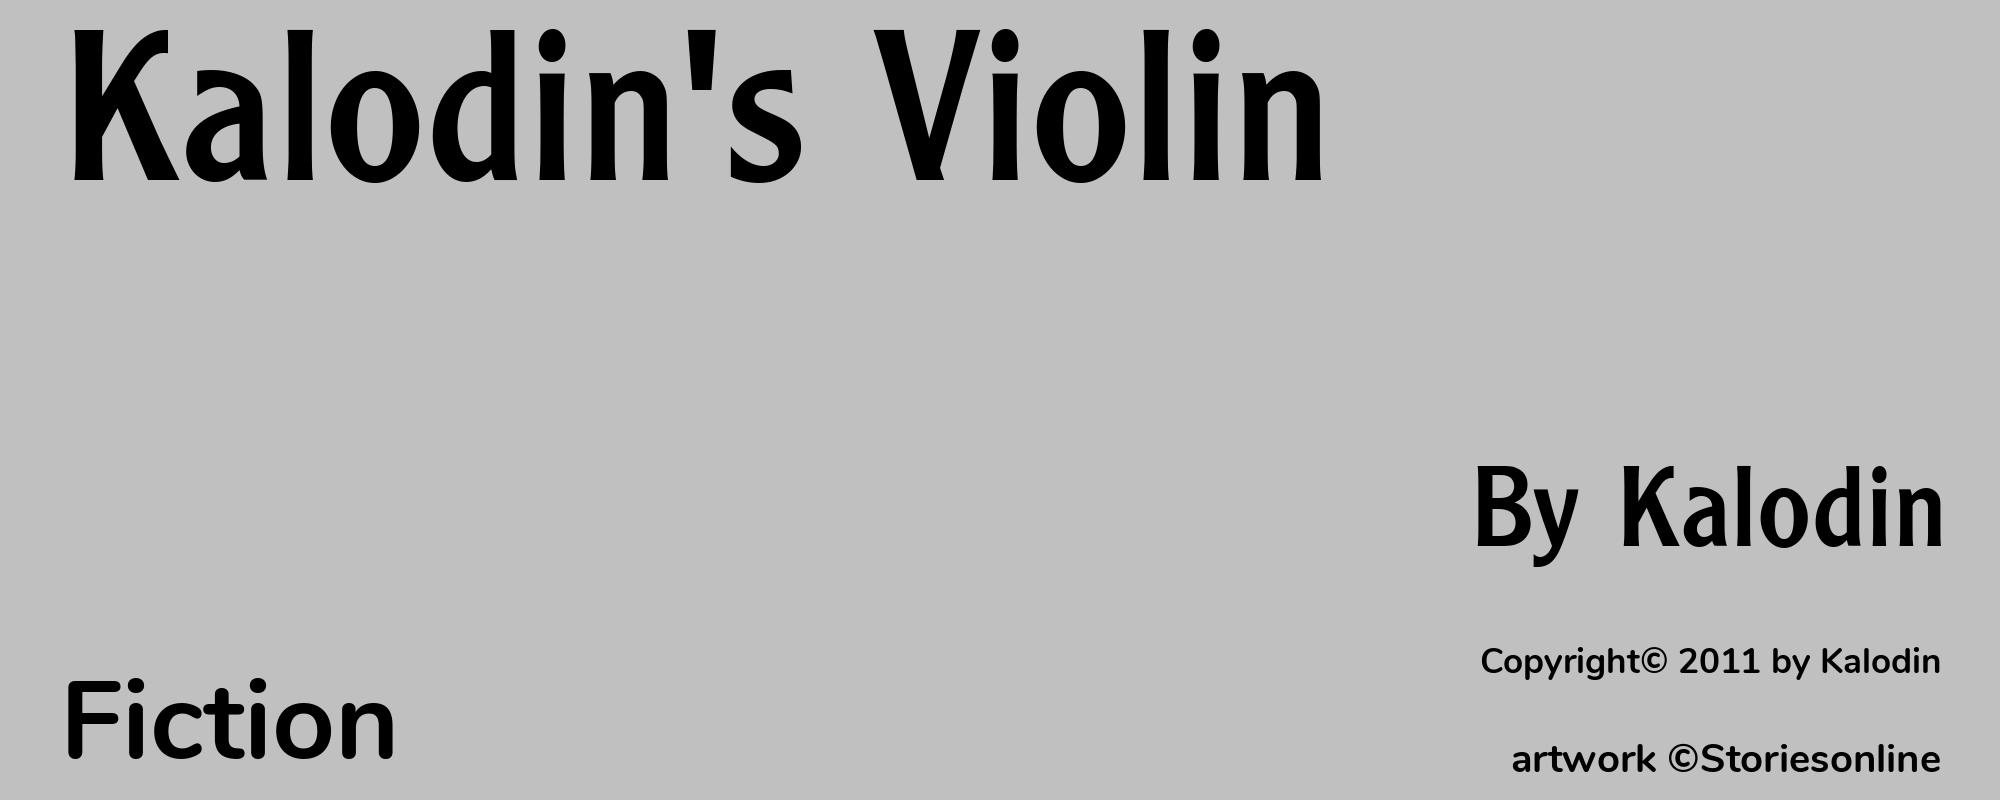 Kalodin's Violin - Cover